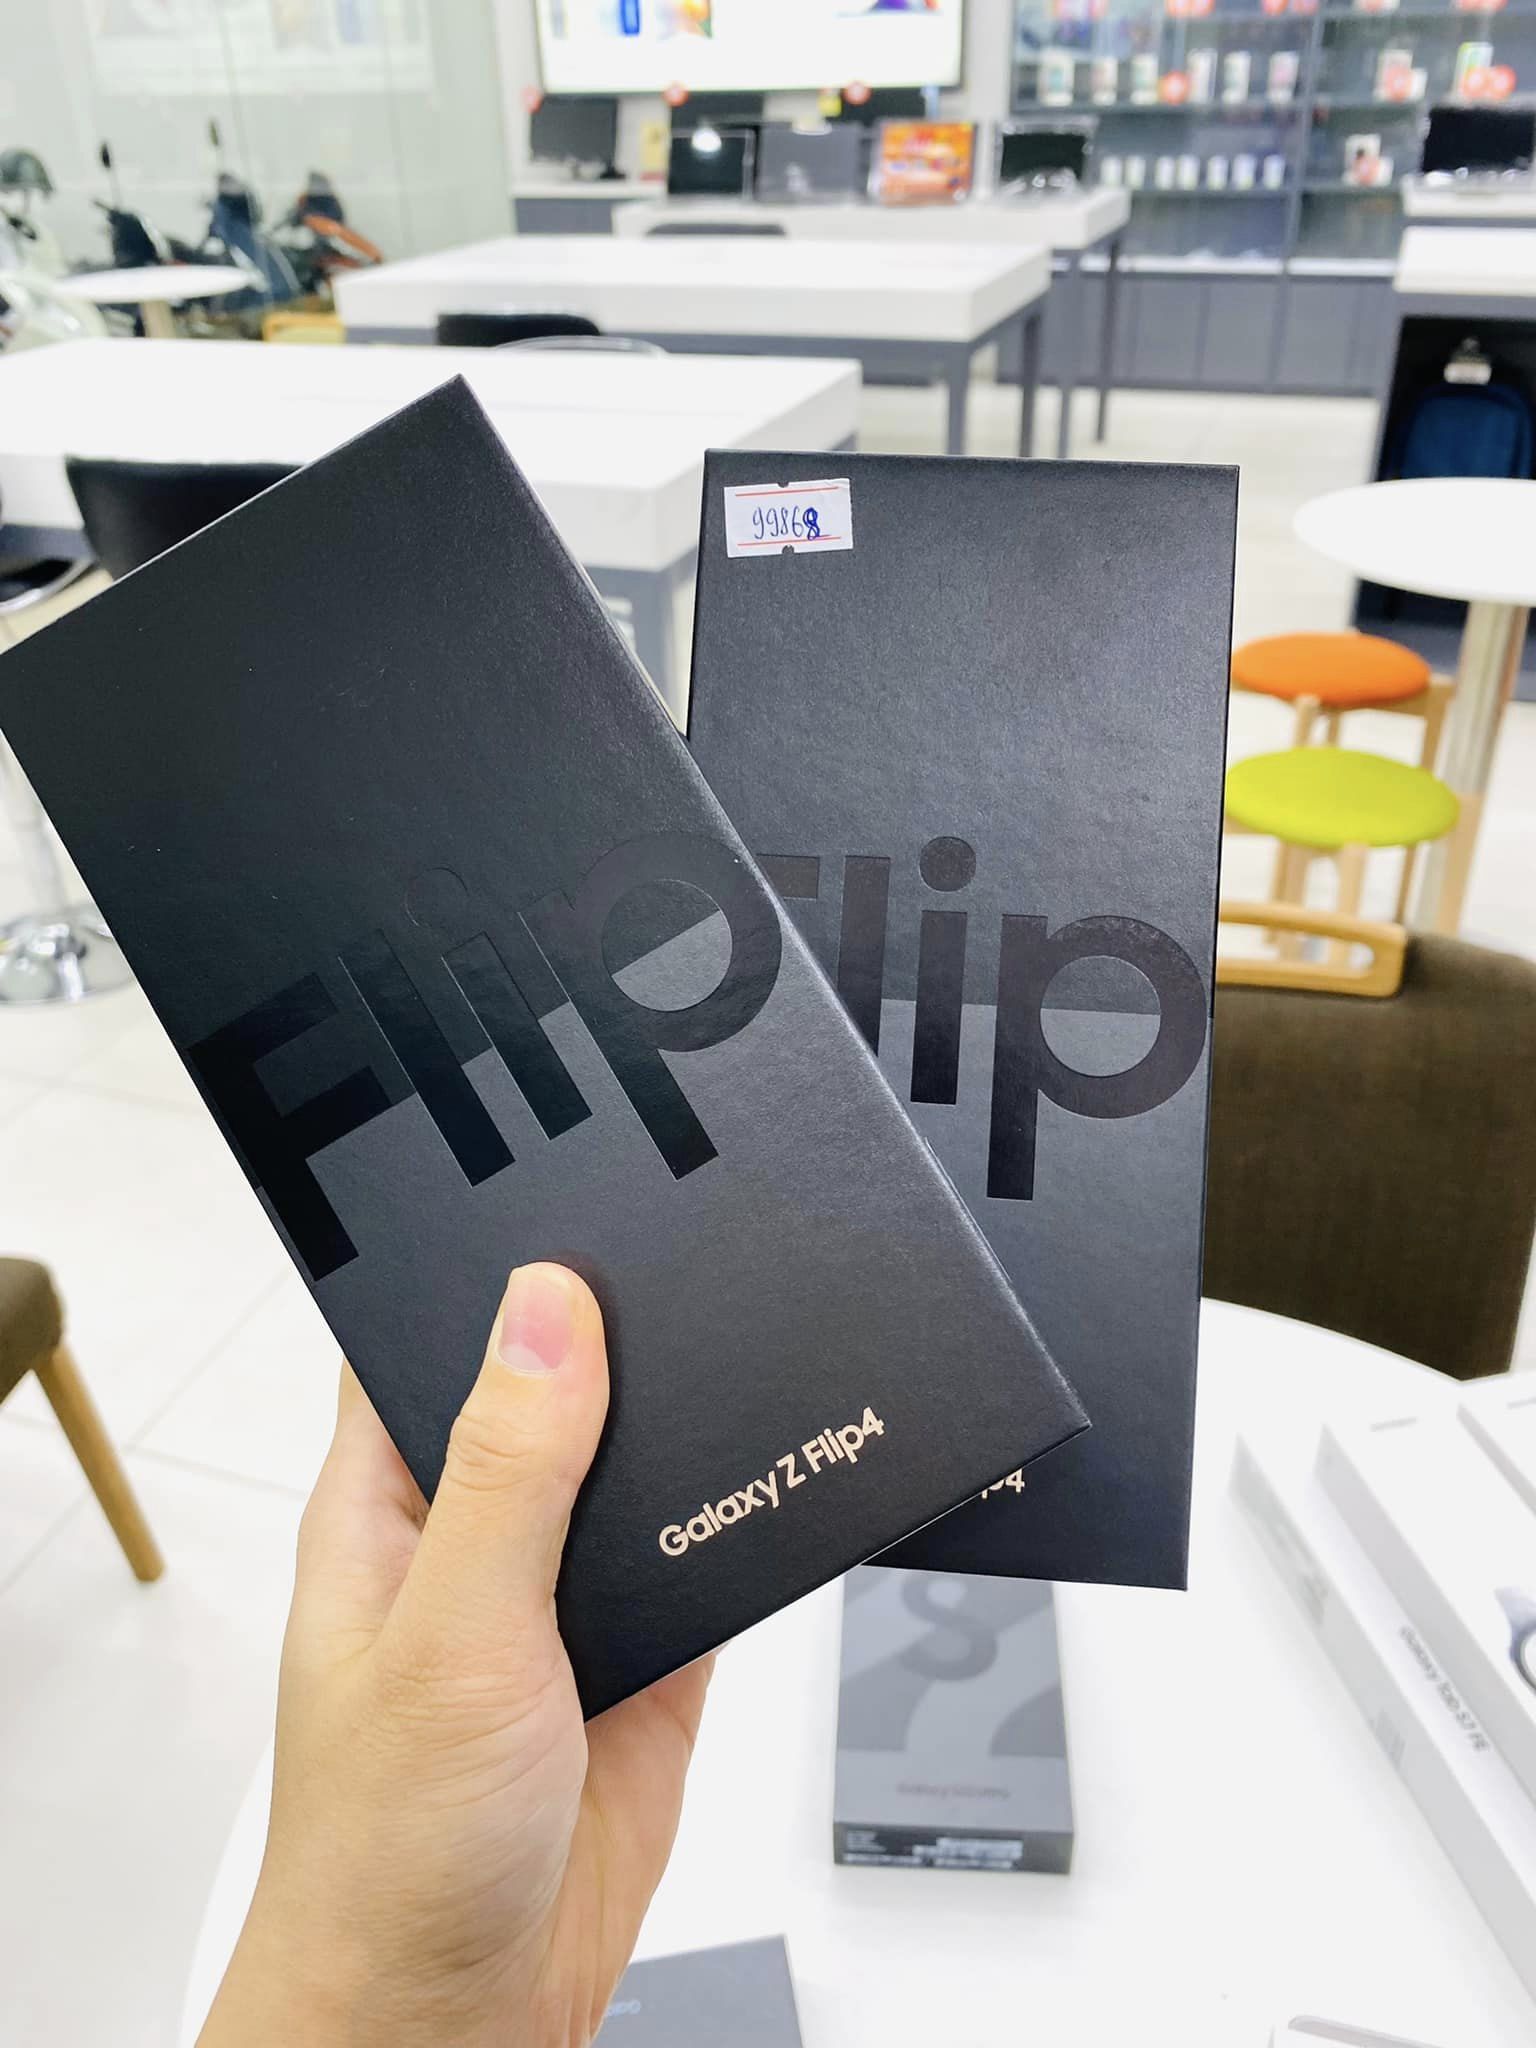 Samsung Galaxy Z FLip 4 siêu phẩm nhà Samsung giá chỉ còn 13.990